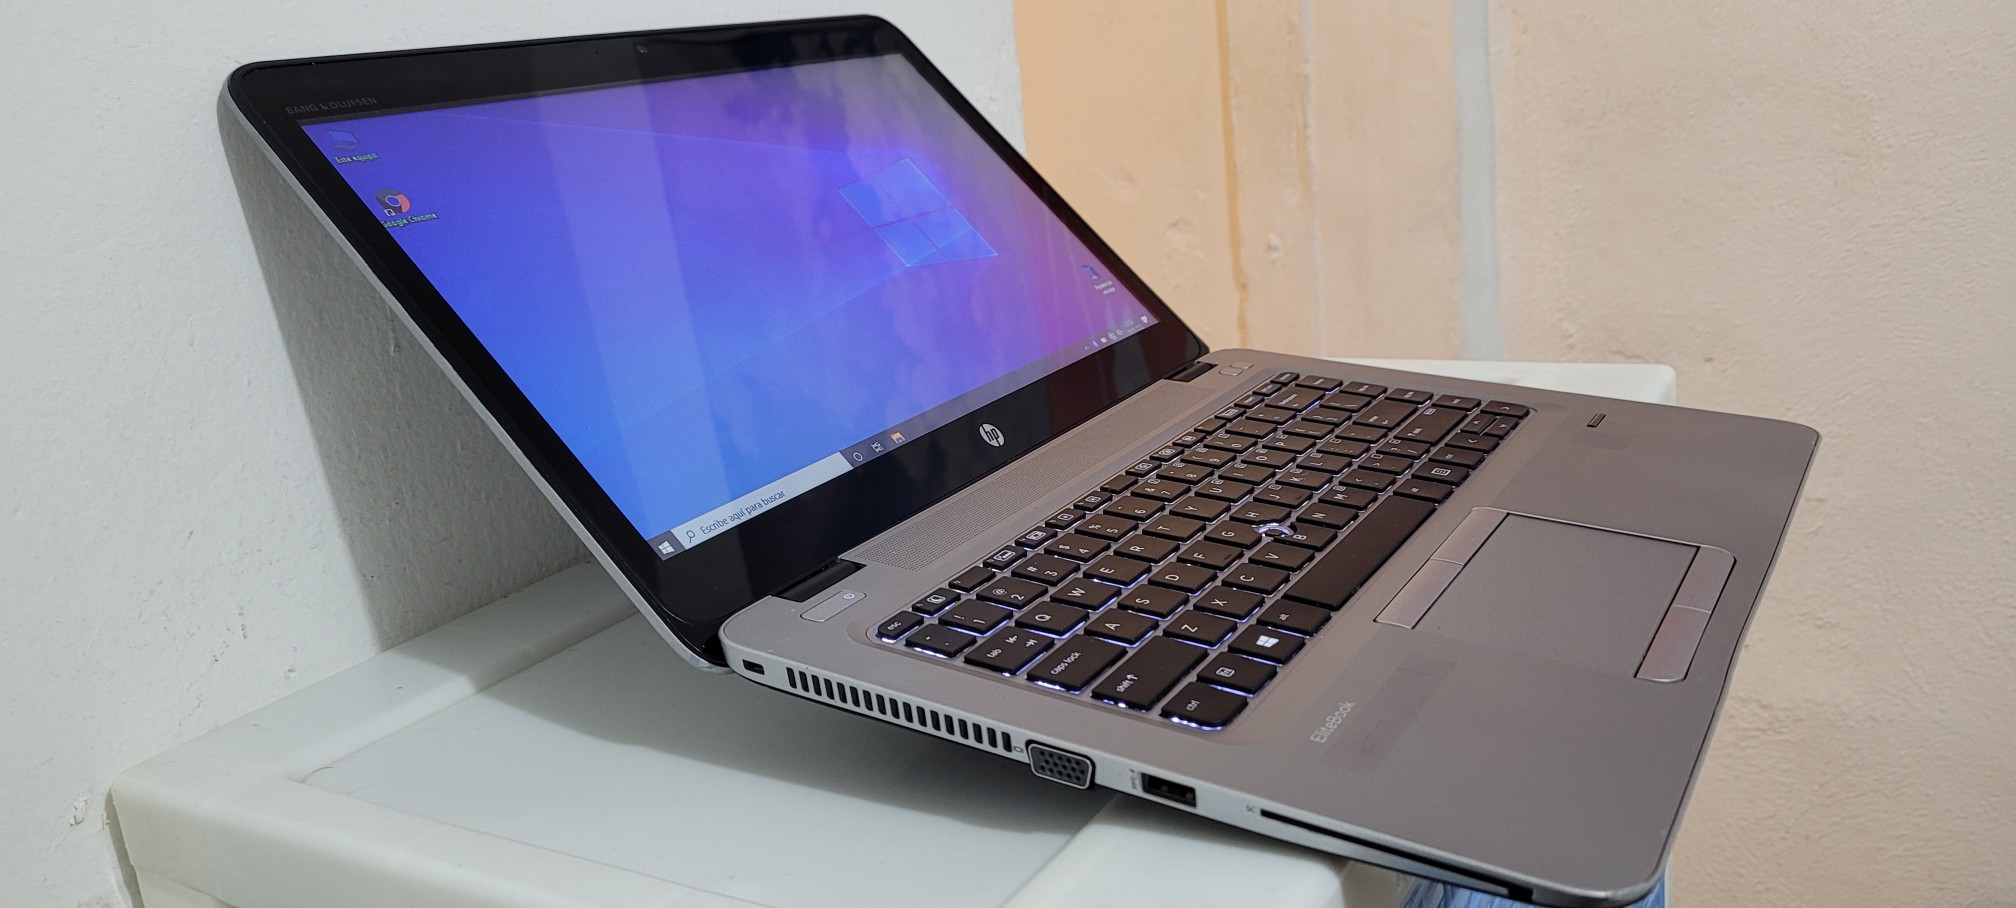 computadoras y laptops - Laptop hp Touch 14 Pulg Core i5 7ma Gen Ram 8gb ddr4 Disco 128gb SSD Y 320gb HD 1